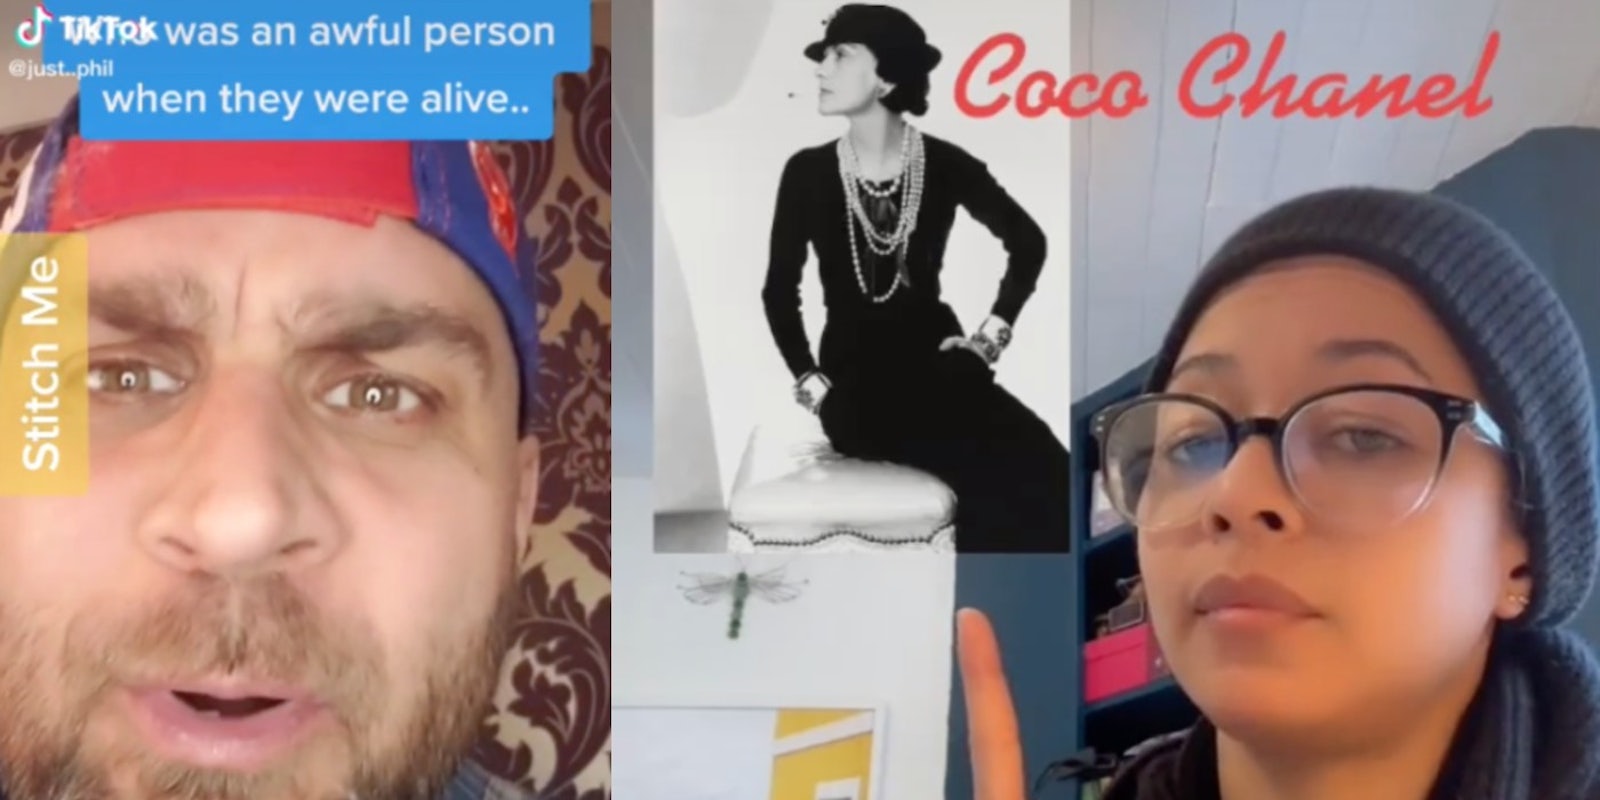 TikTok Challenge claims Coco Chanel was a Nazi spy